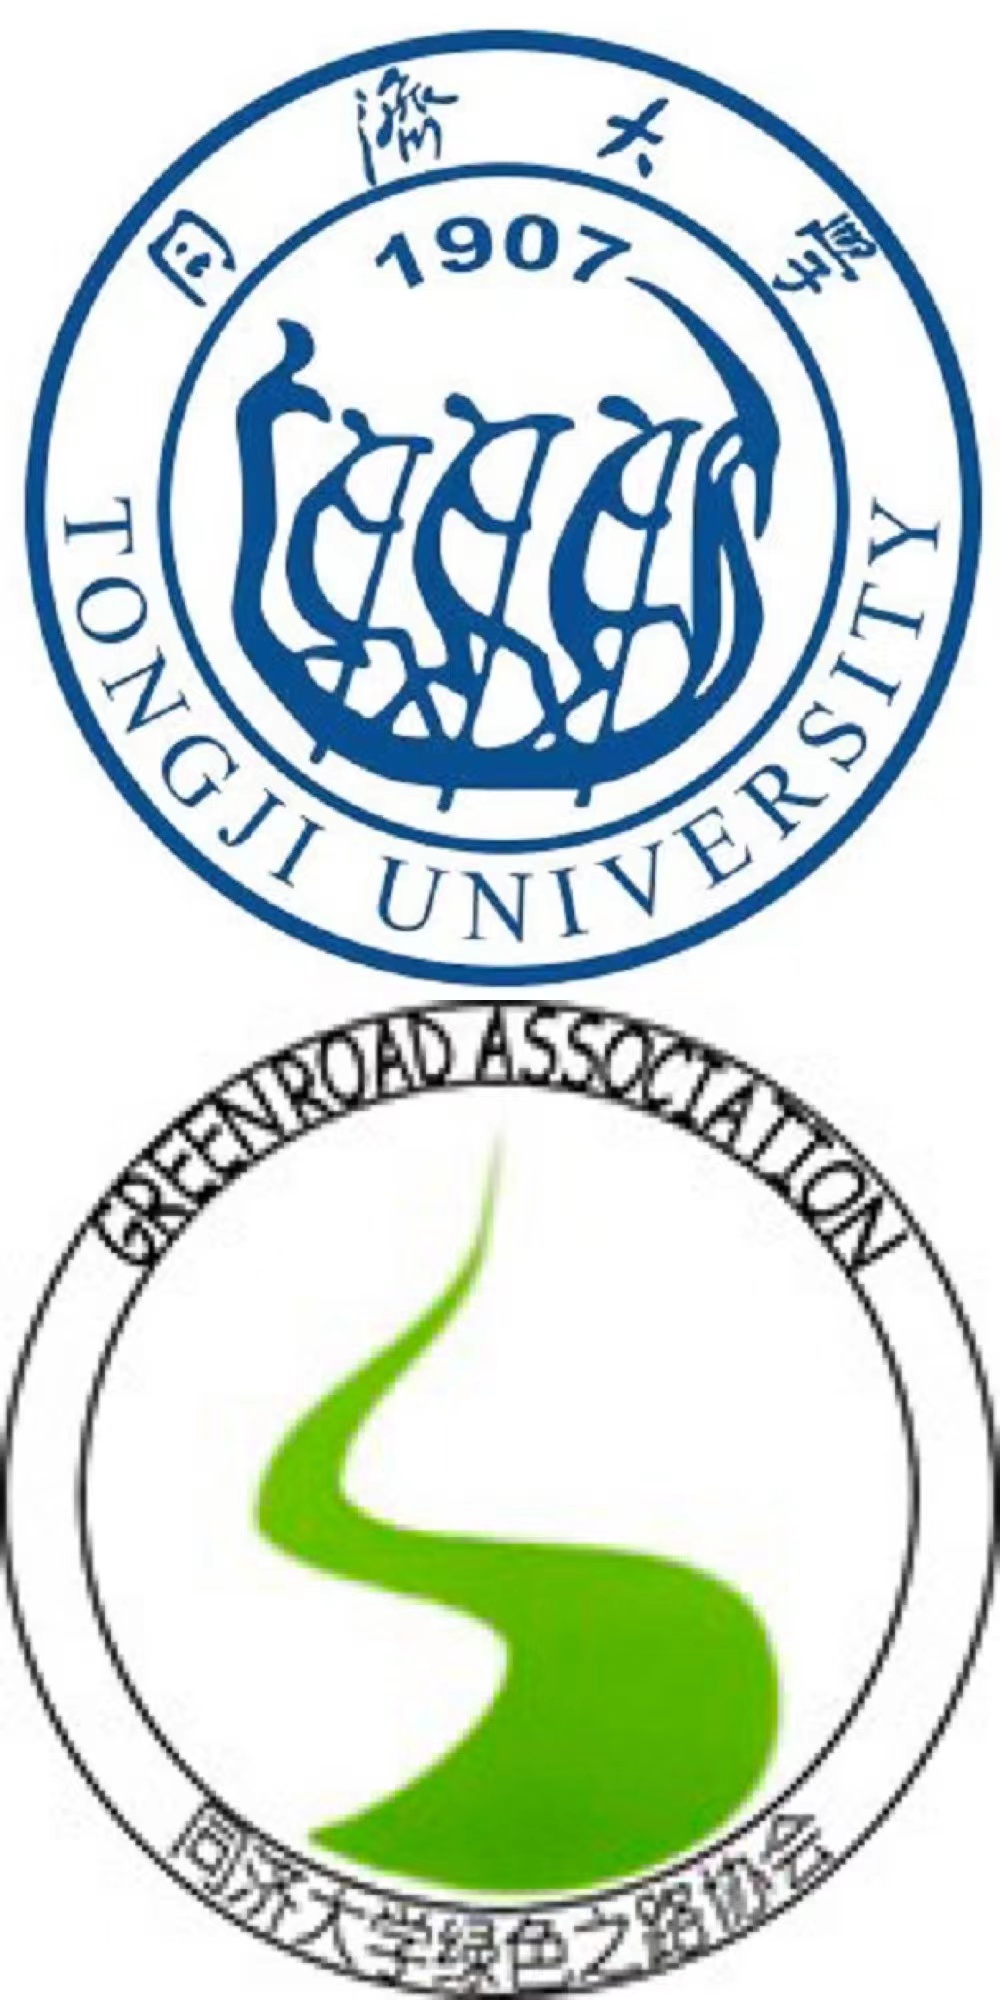 U003Tong Ji University-Greenroad Union Group